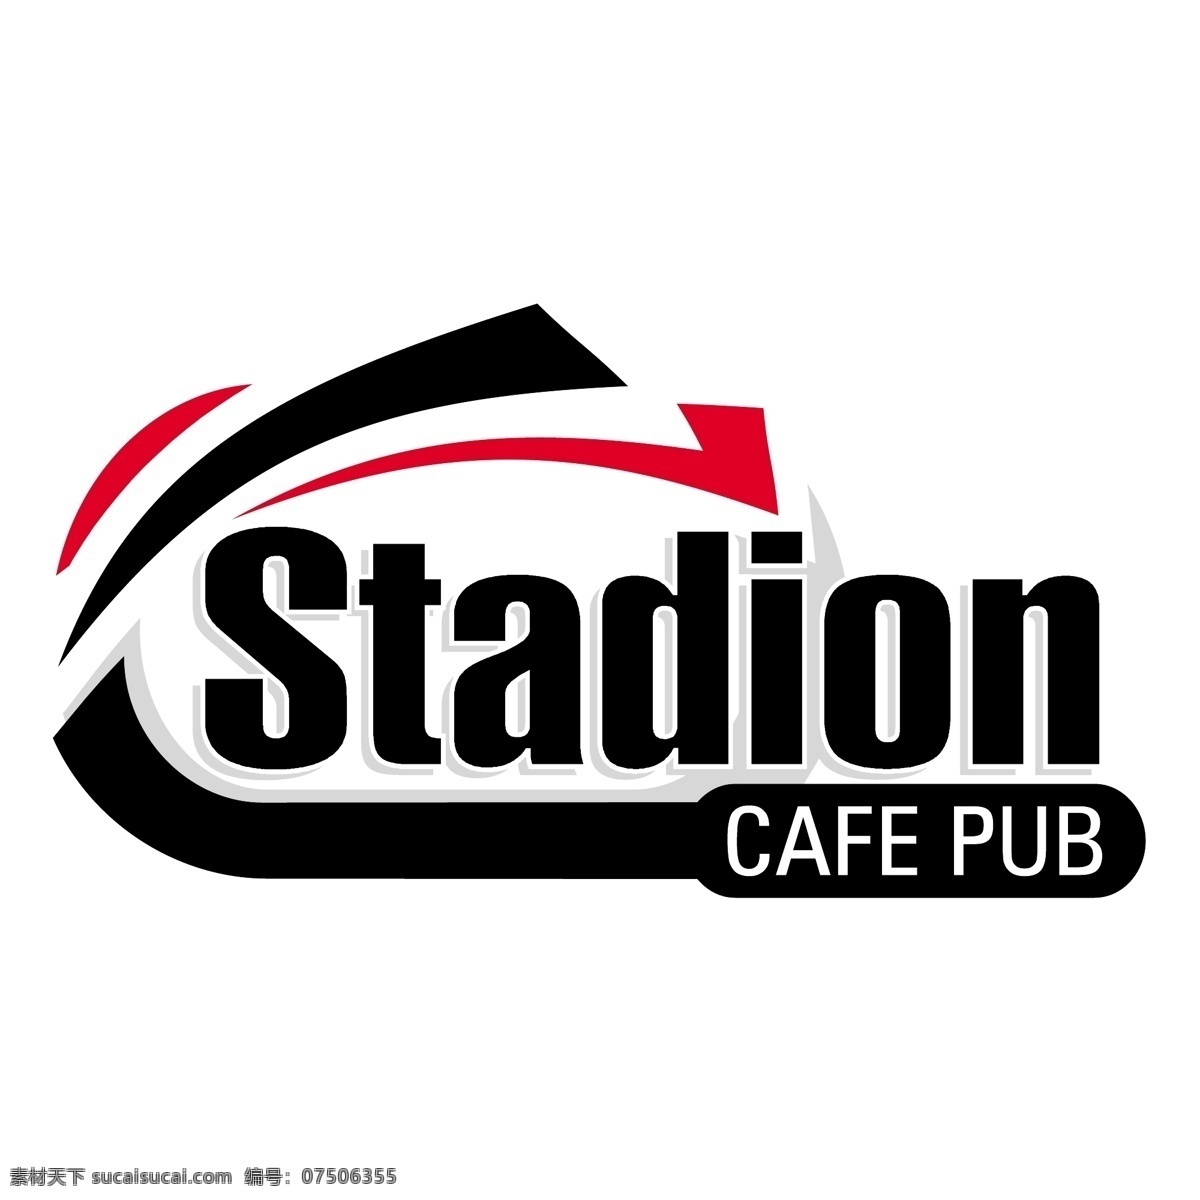 球场 咖啡 酒吧 自由 标志 标识 psd源文件 logo设计